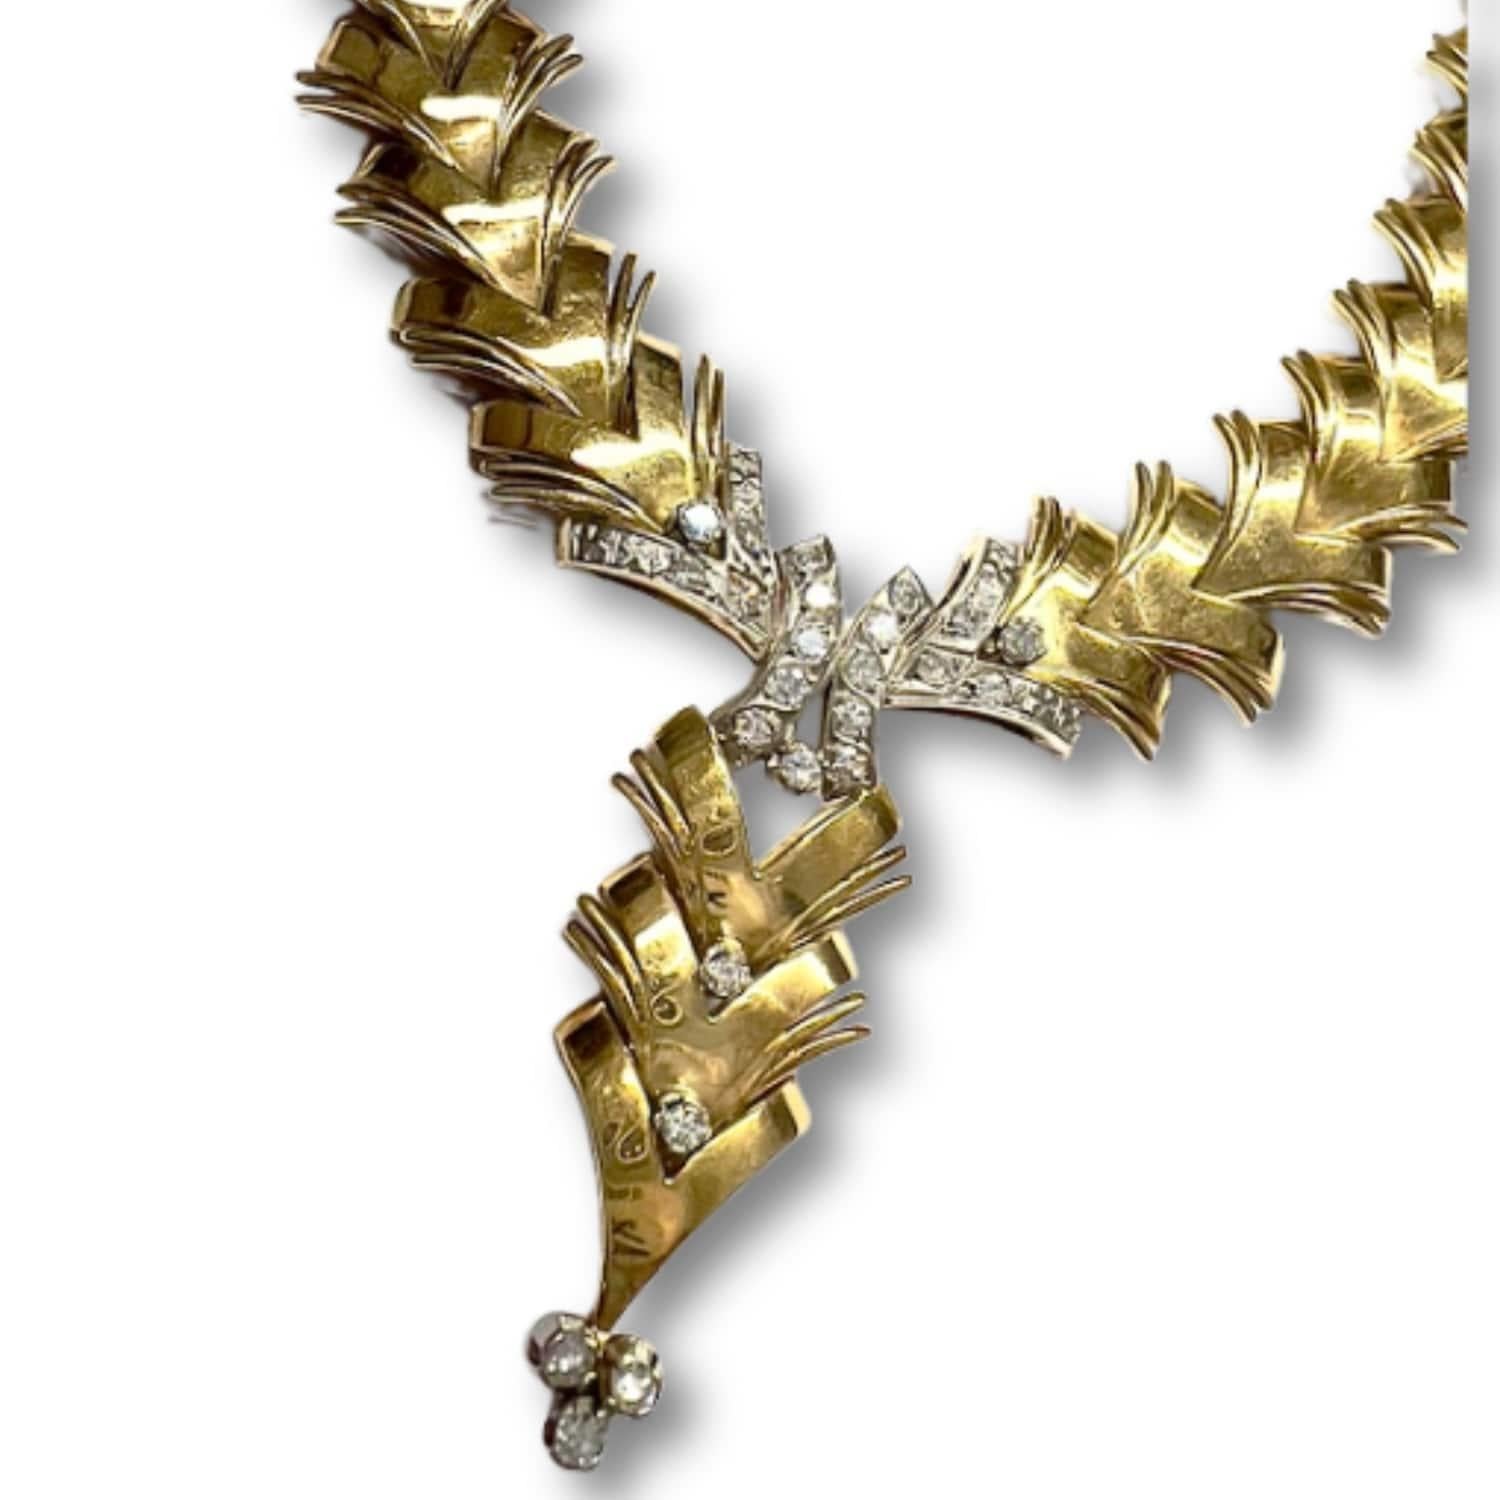 Erhöhen Sie Ihren Stil mit dieser exquisiten Halskette im Retro Spiga Design aus 18-karätigem Gelbgold, die mit funkelnden Diamanten verziert ist. Diese Halskette strahlt Raffinesse und Charme aus und bietet eine zeitlose Eleganz, die zu jedem